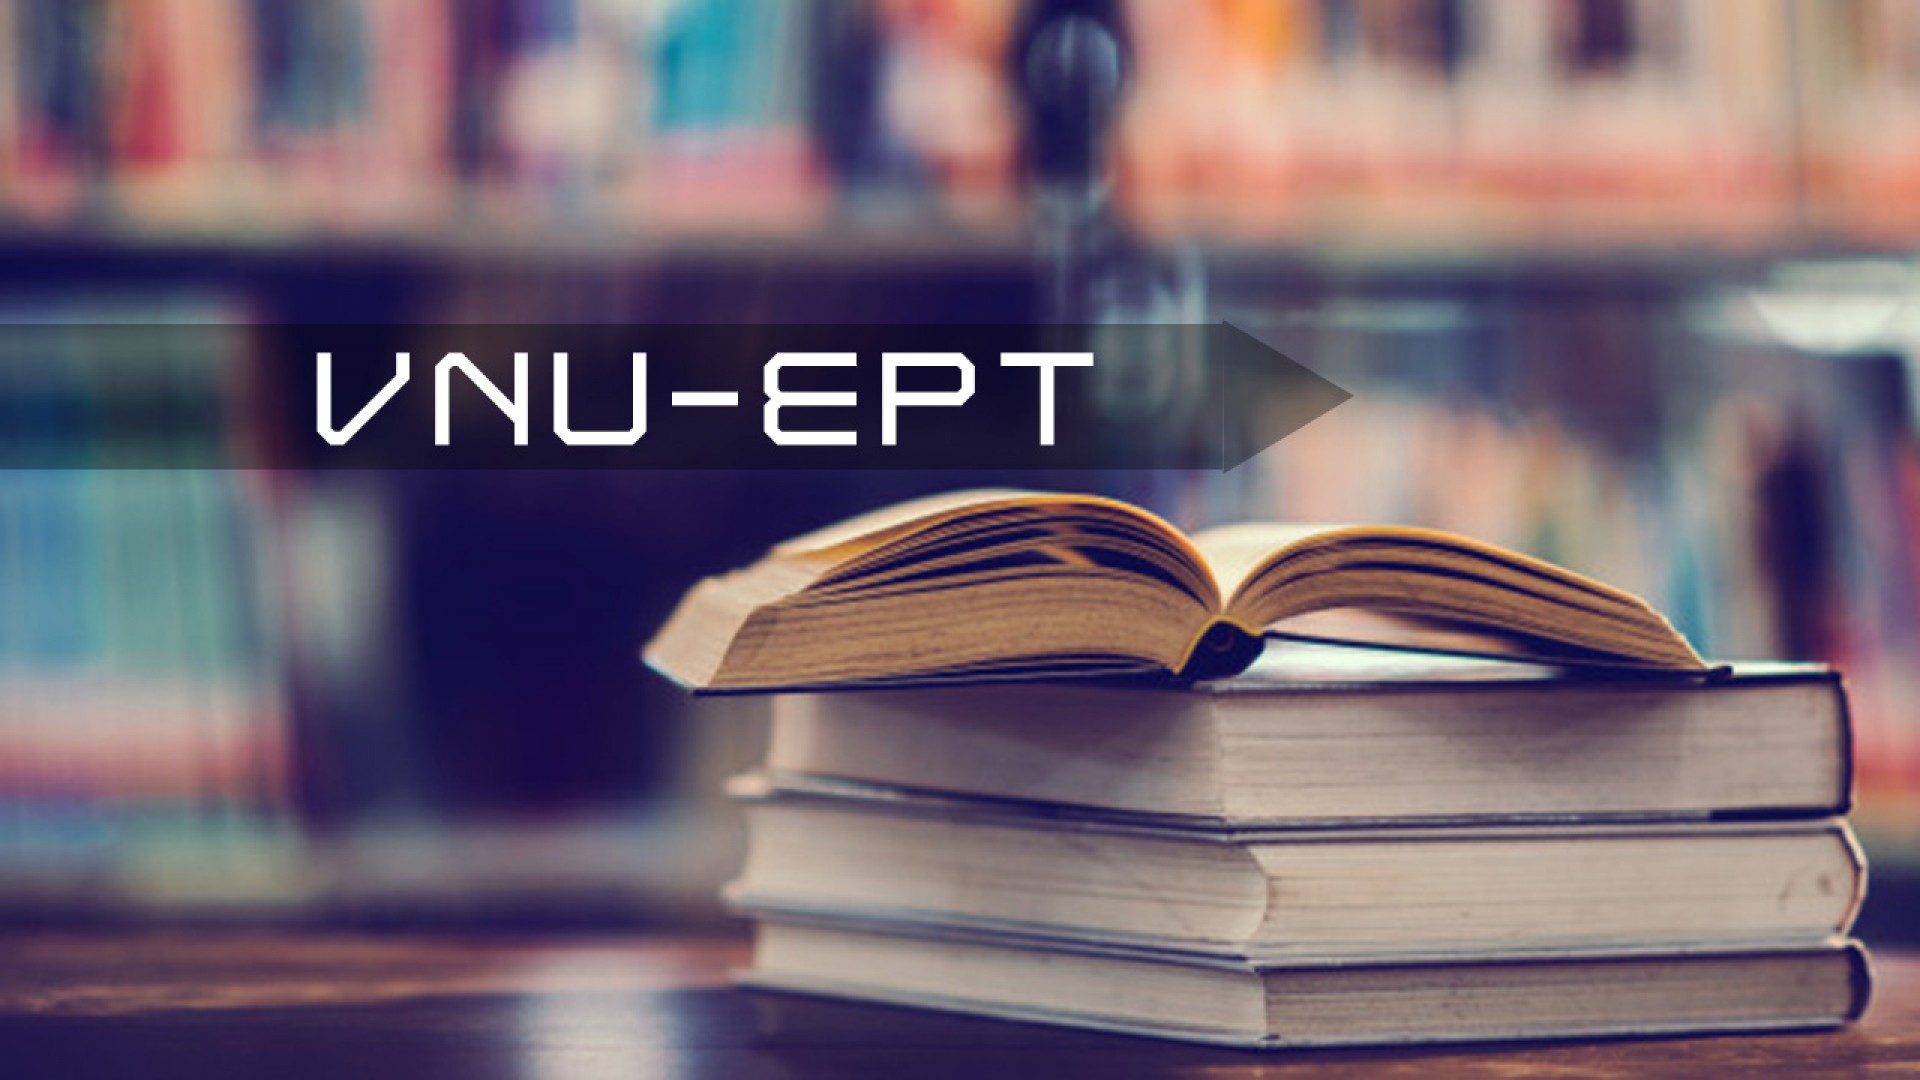 5 practice tests for the VNU-EPT: Hành trang không thể thiếu cho kỳ thi VNU-EPT